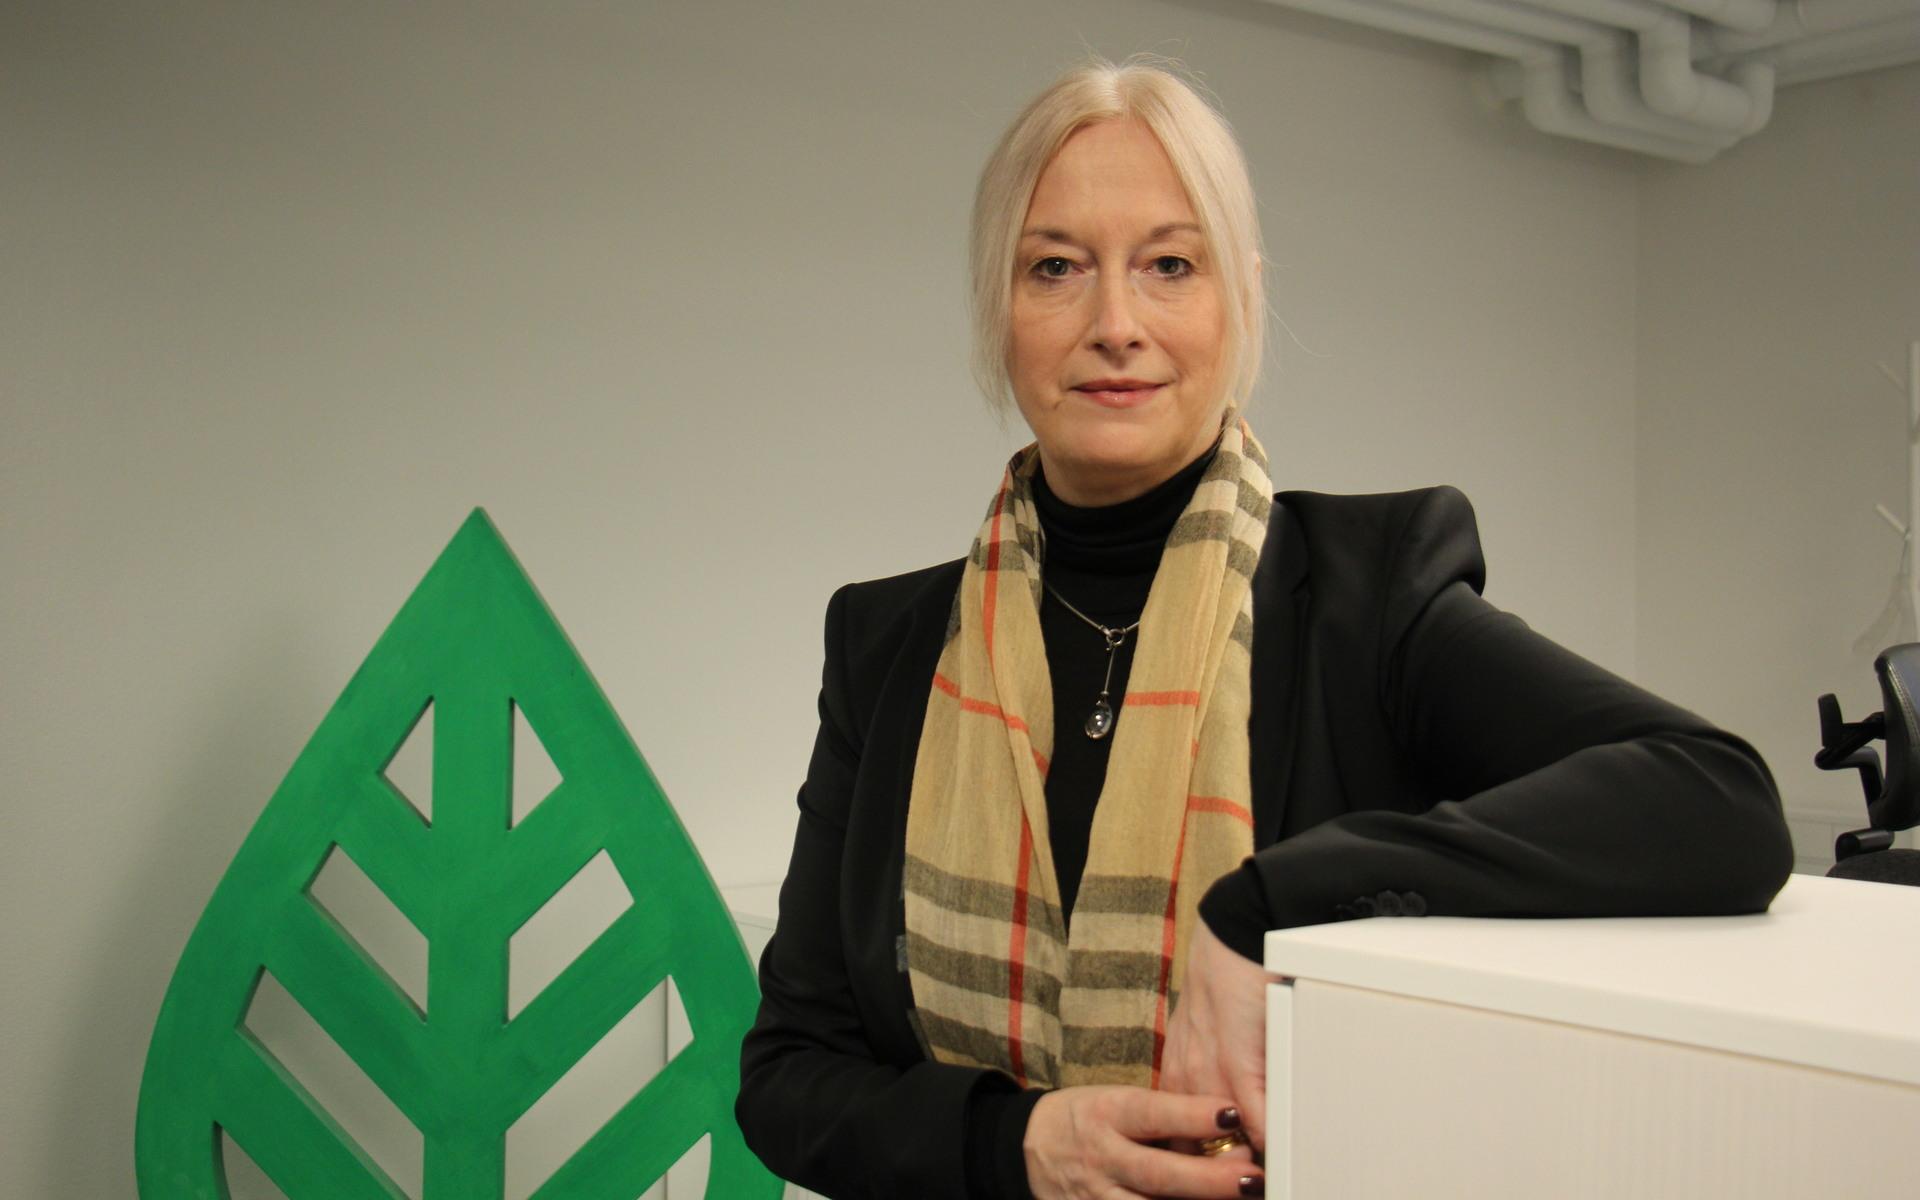 Charlotta Jönsson är marknadschef på Mölndal energi och hon berättar att många hör av sig med frågor om senaste elräkningen.